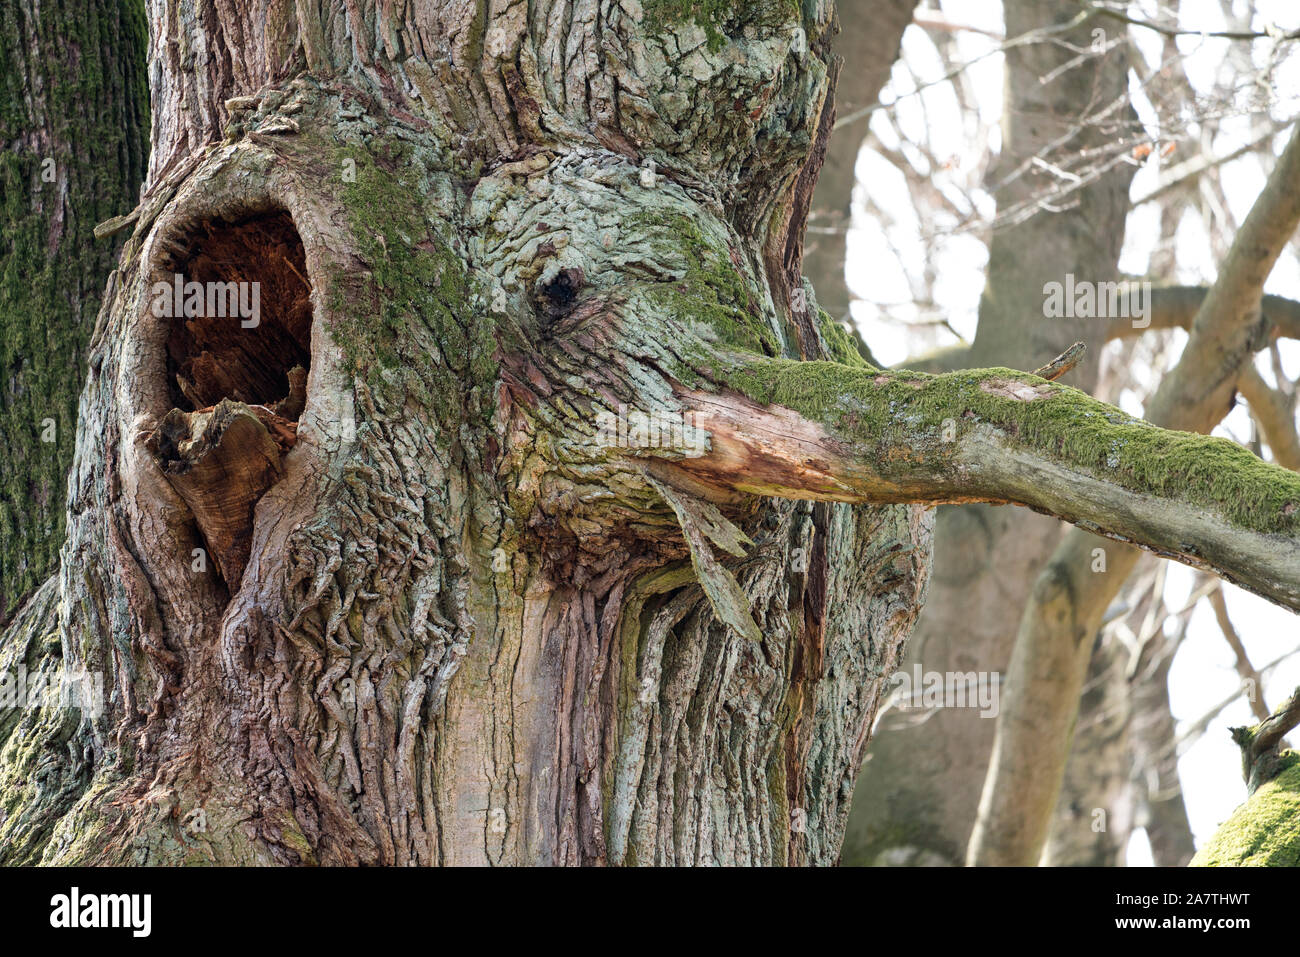 Cara de árbol, se parece a un elefante, el bosque primitivo Urwald Sababurg, Hofgeismar, Weser Uplands, Weserbergland, Hesse, Alemania Foto de stock